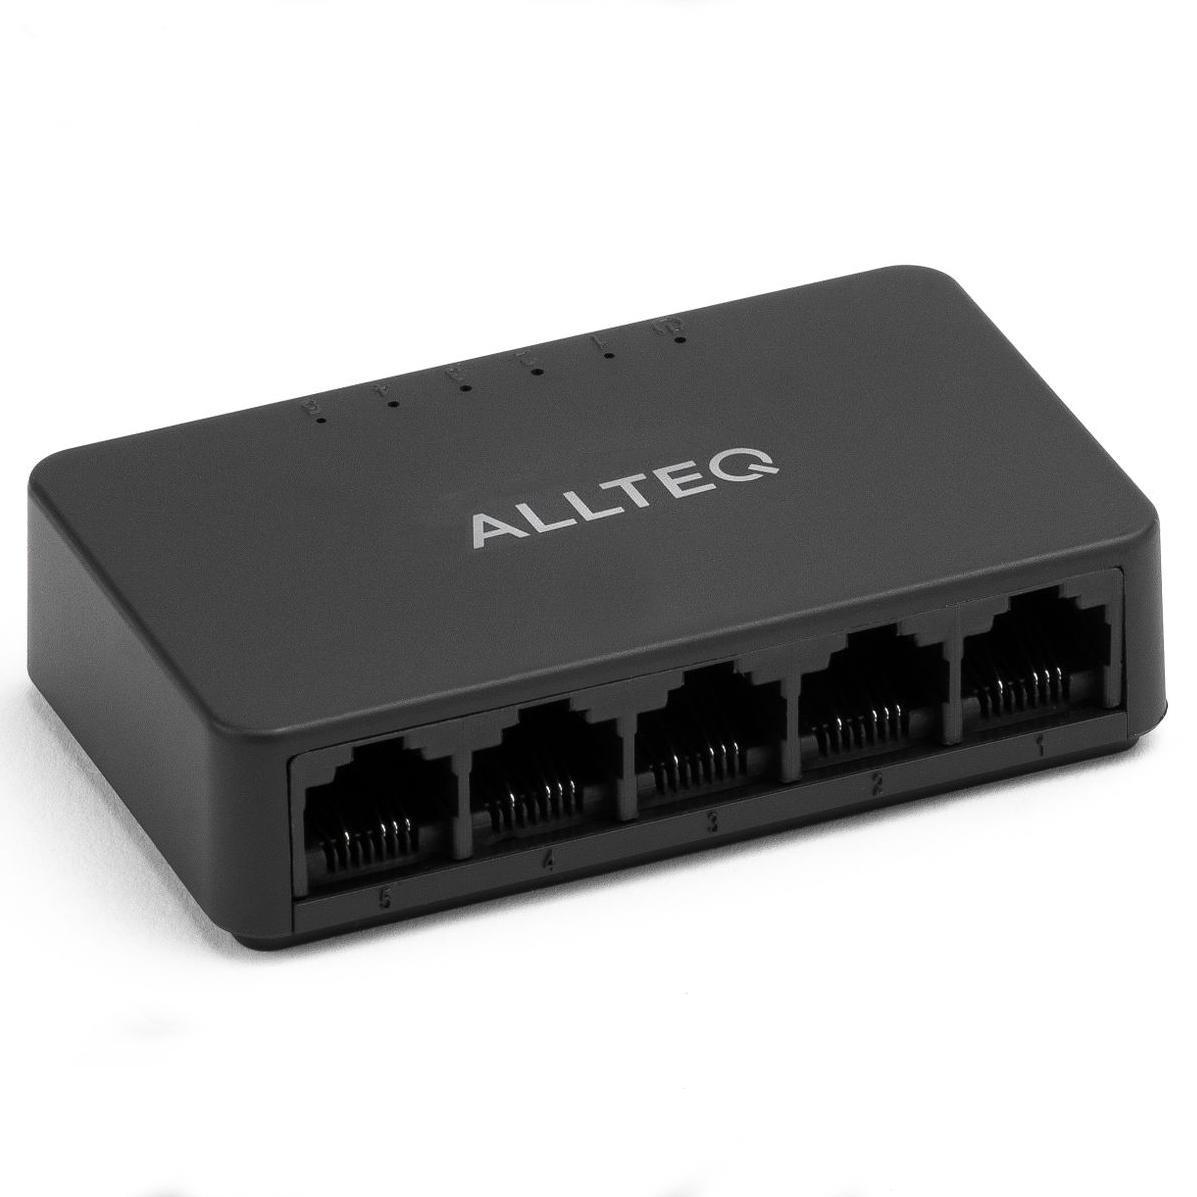 5-poorts netwerk switch - Allteq